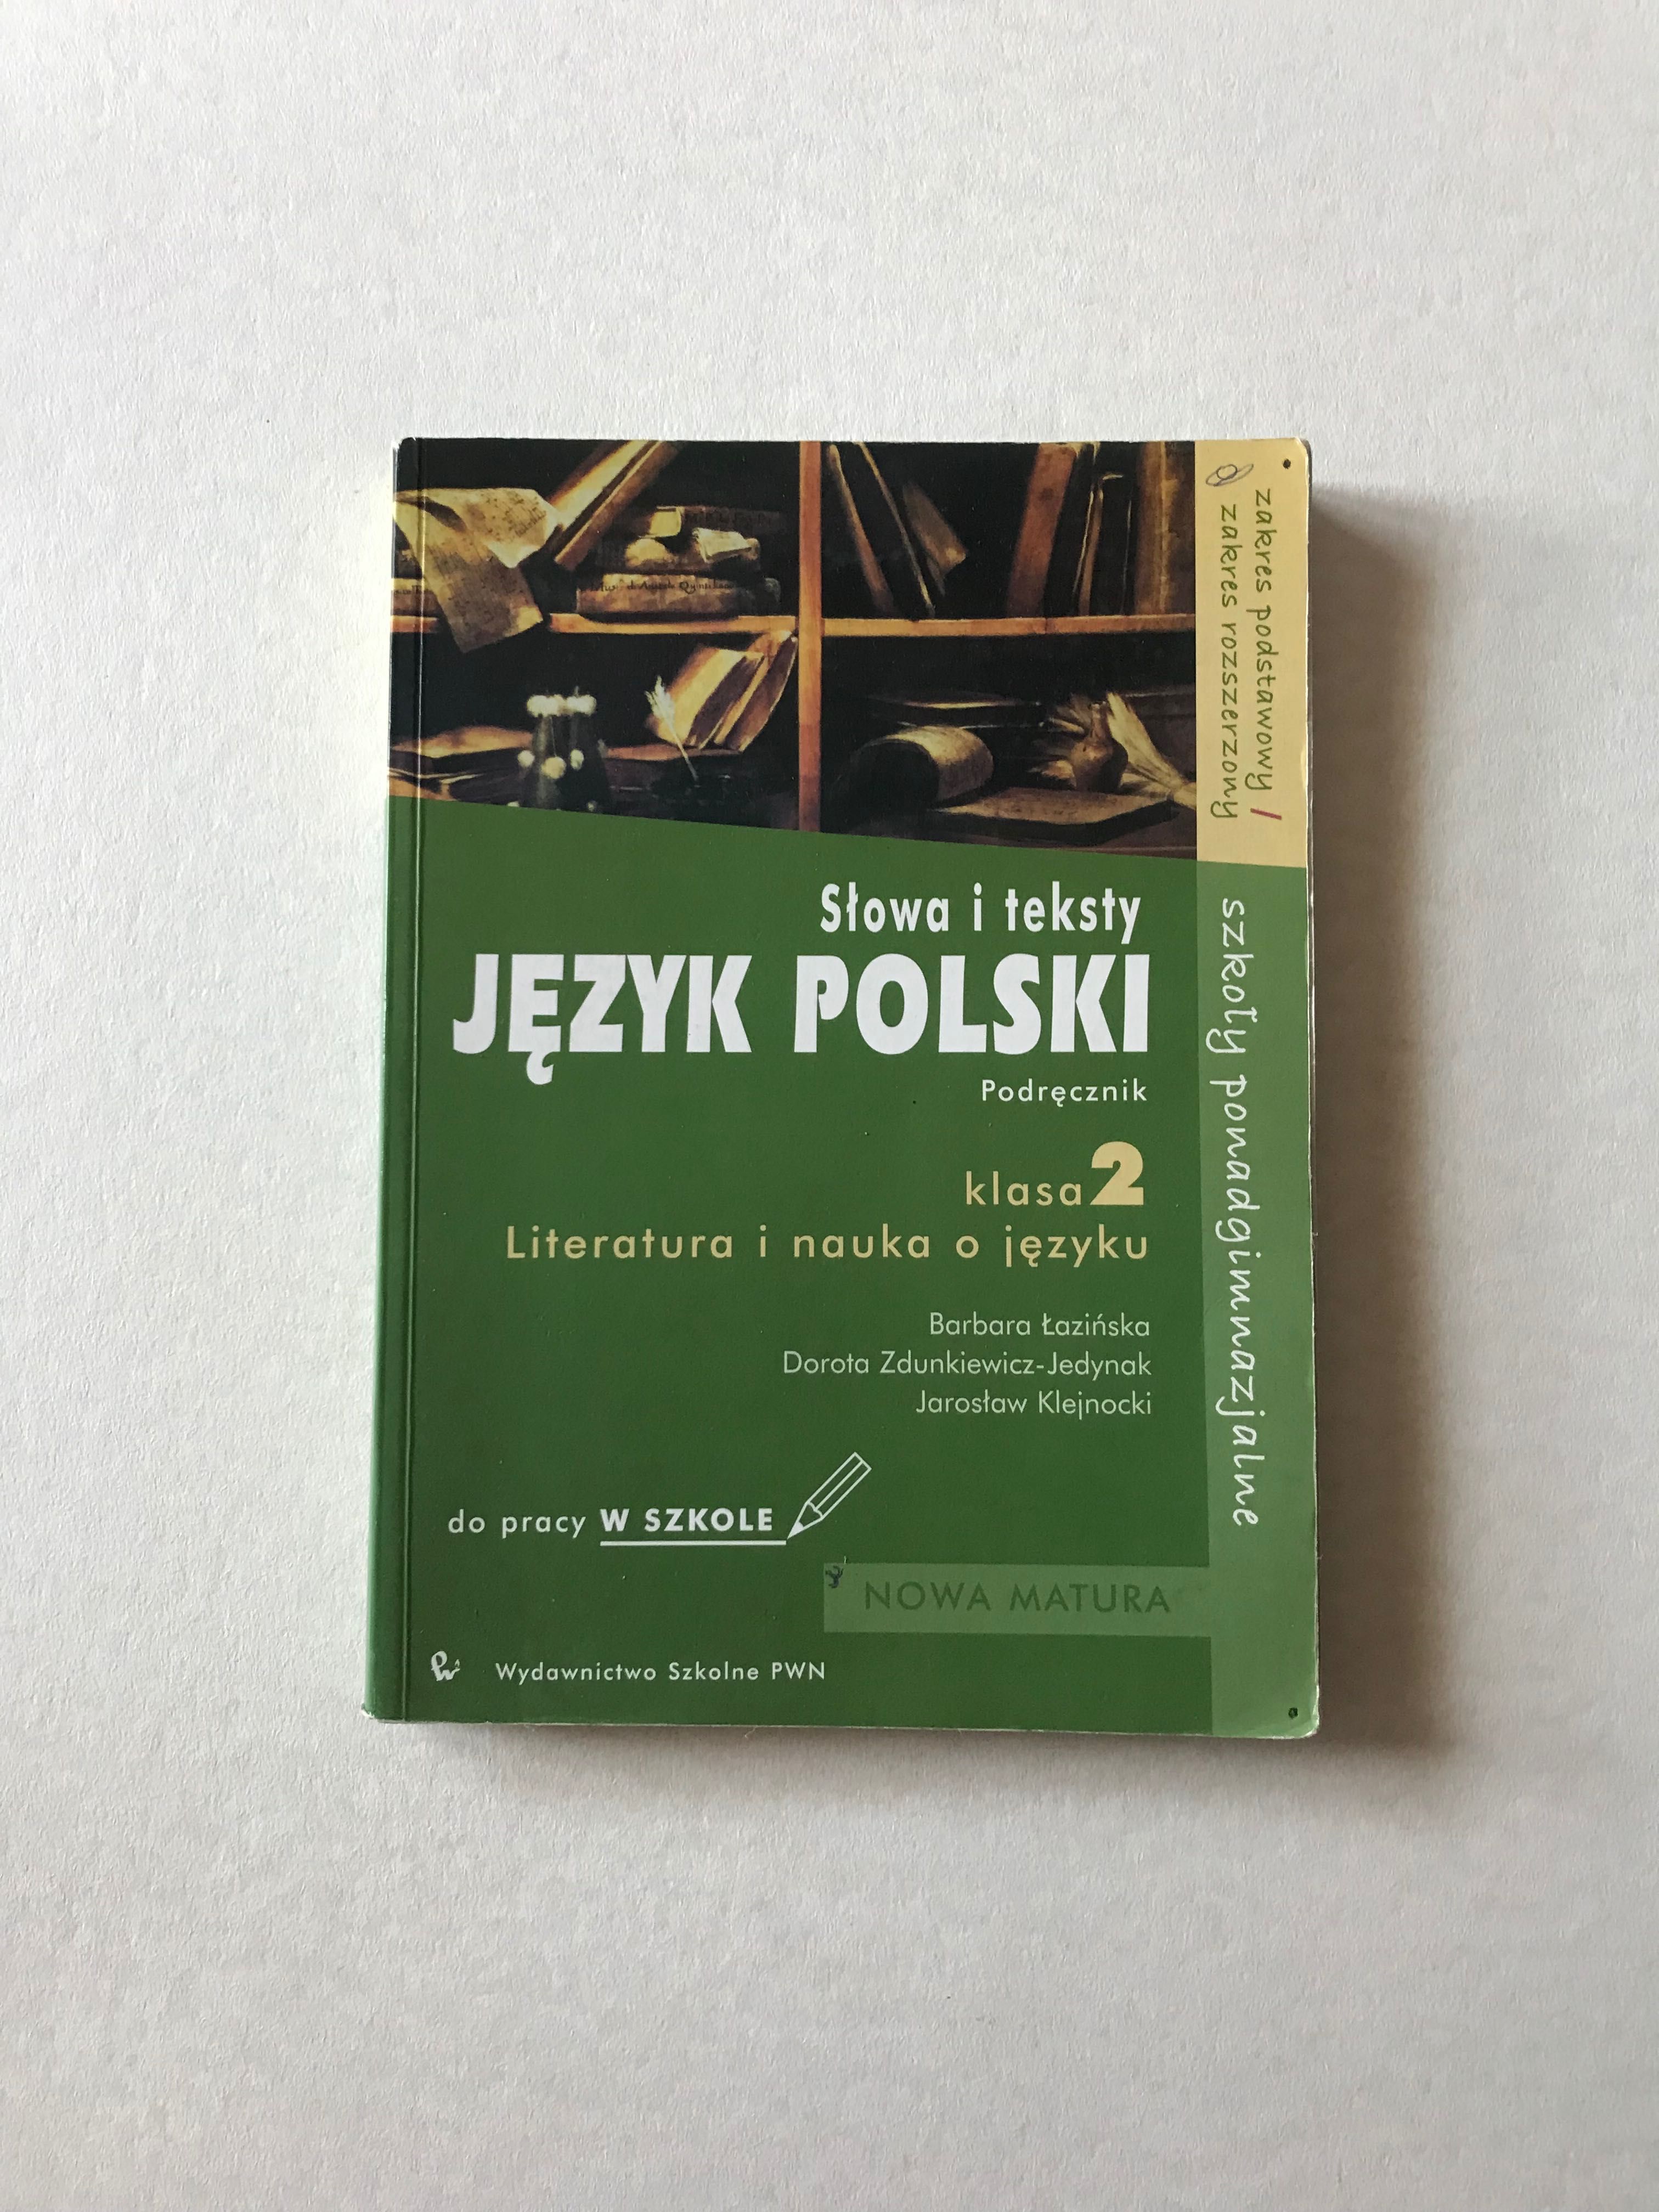 Podręczniki: Historia-Spotkanie z kulturą, Język Polski-Słowa i teksty